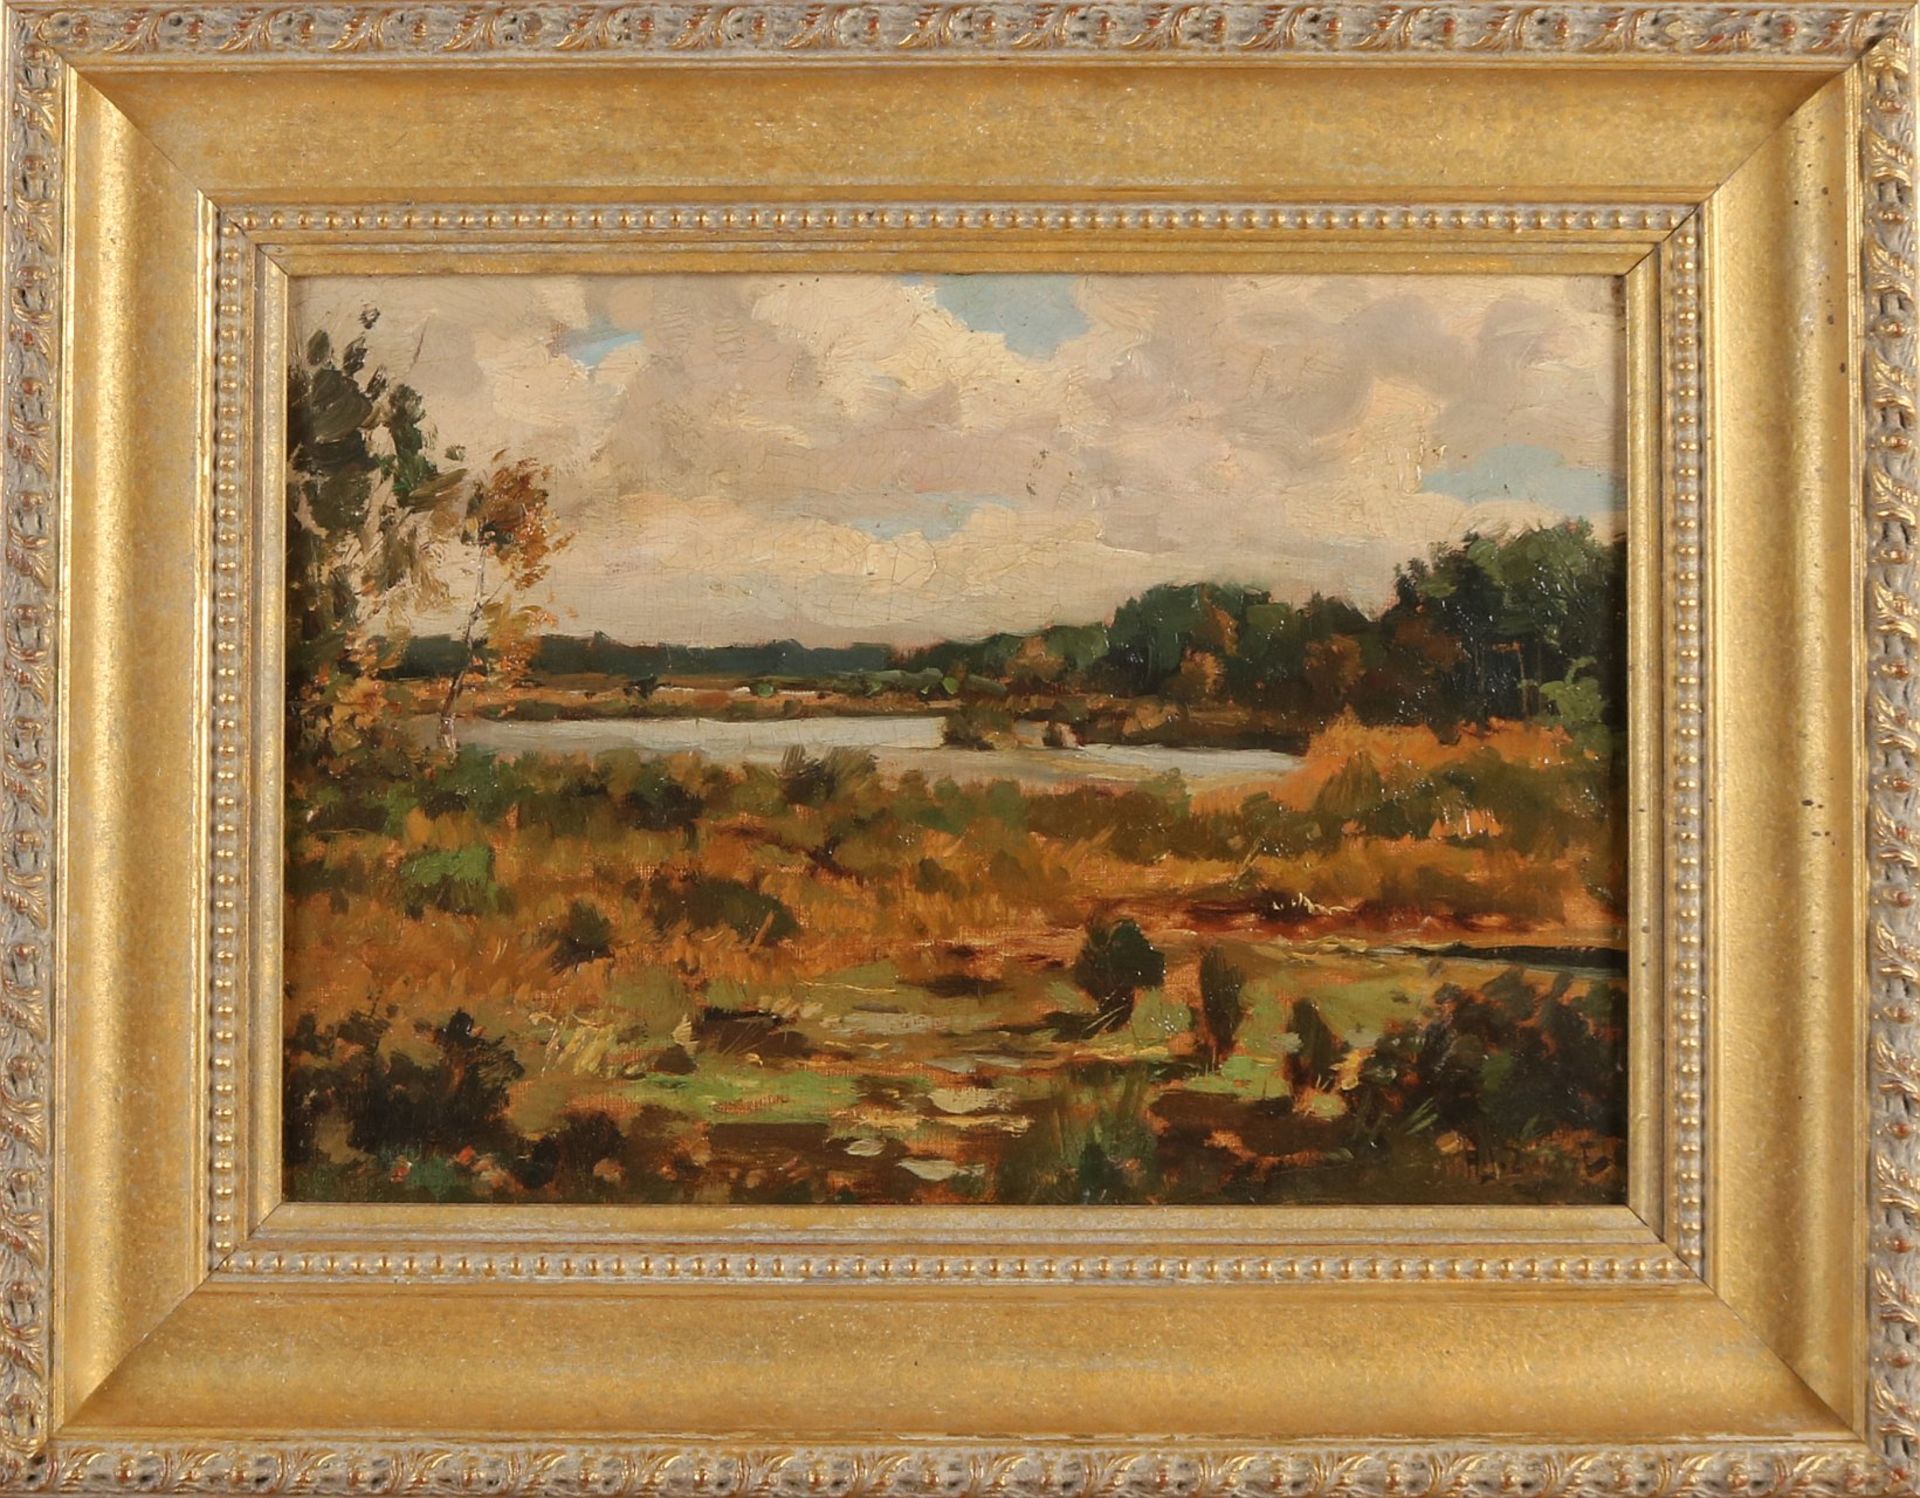 AJ Black. 1903 - 1981. Landschaft mit Moor. Öl auf Leinen. Abmessungen: H 26 x B 36 cm. In gut